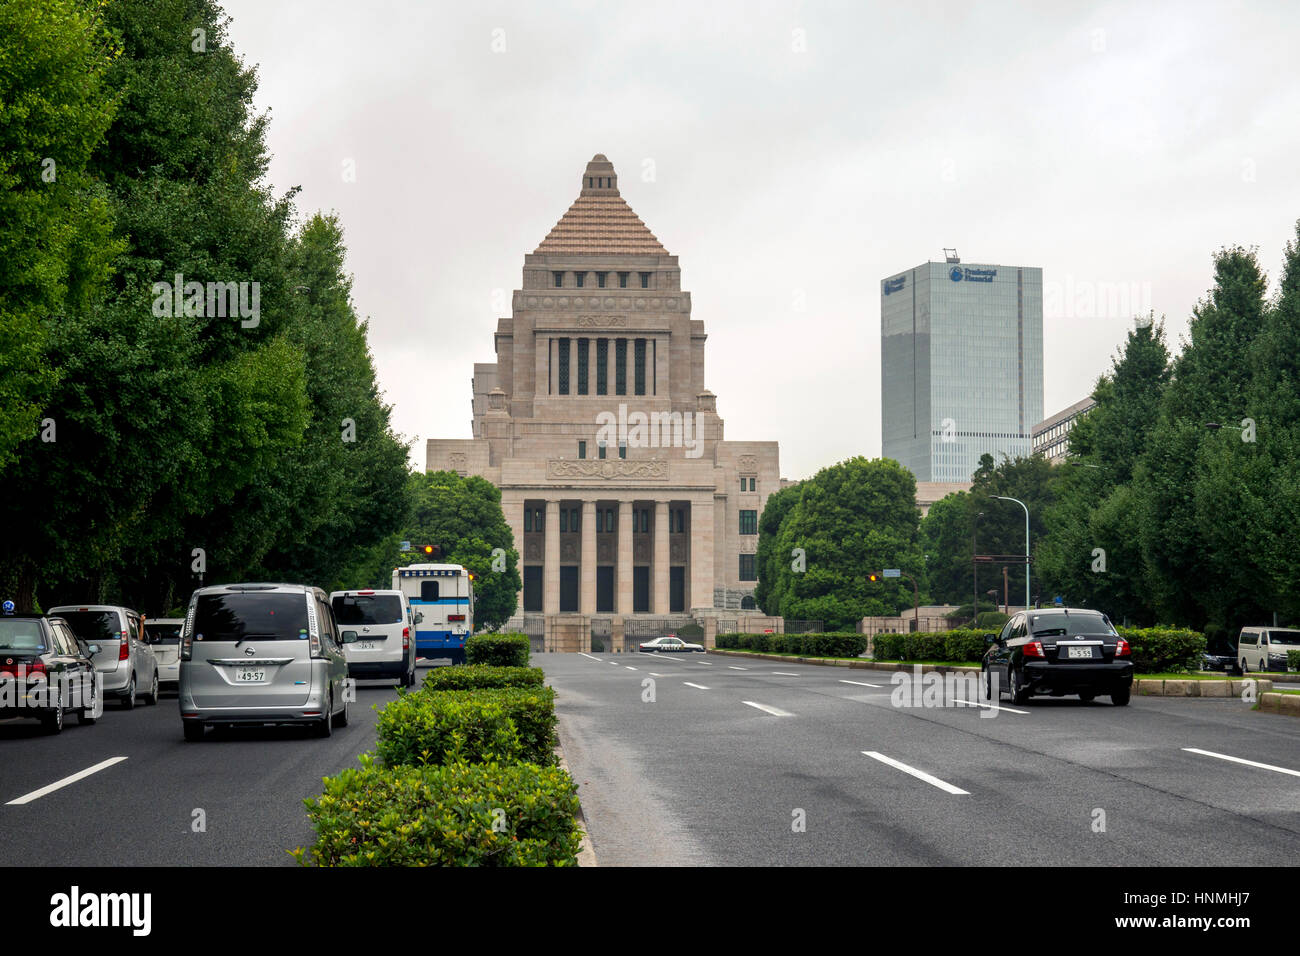 Le trafic sur la rue au bâtiment de la diète de Tokyo, Japon. Banque D'Images